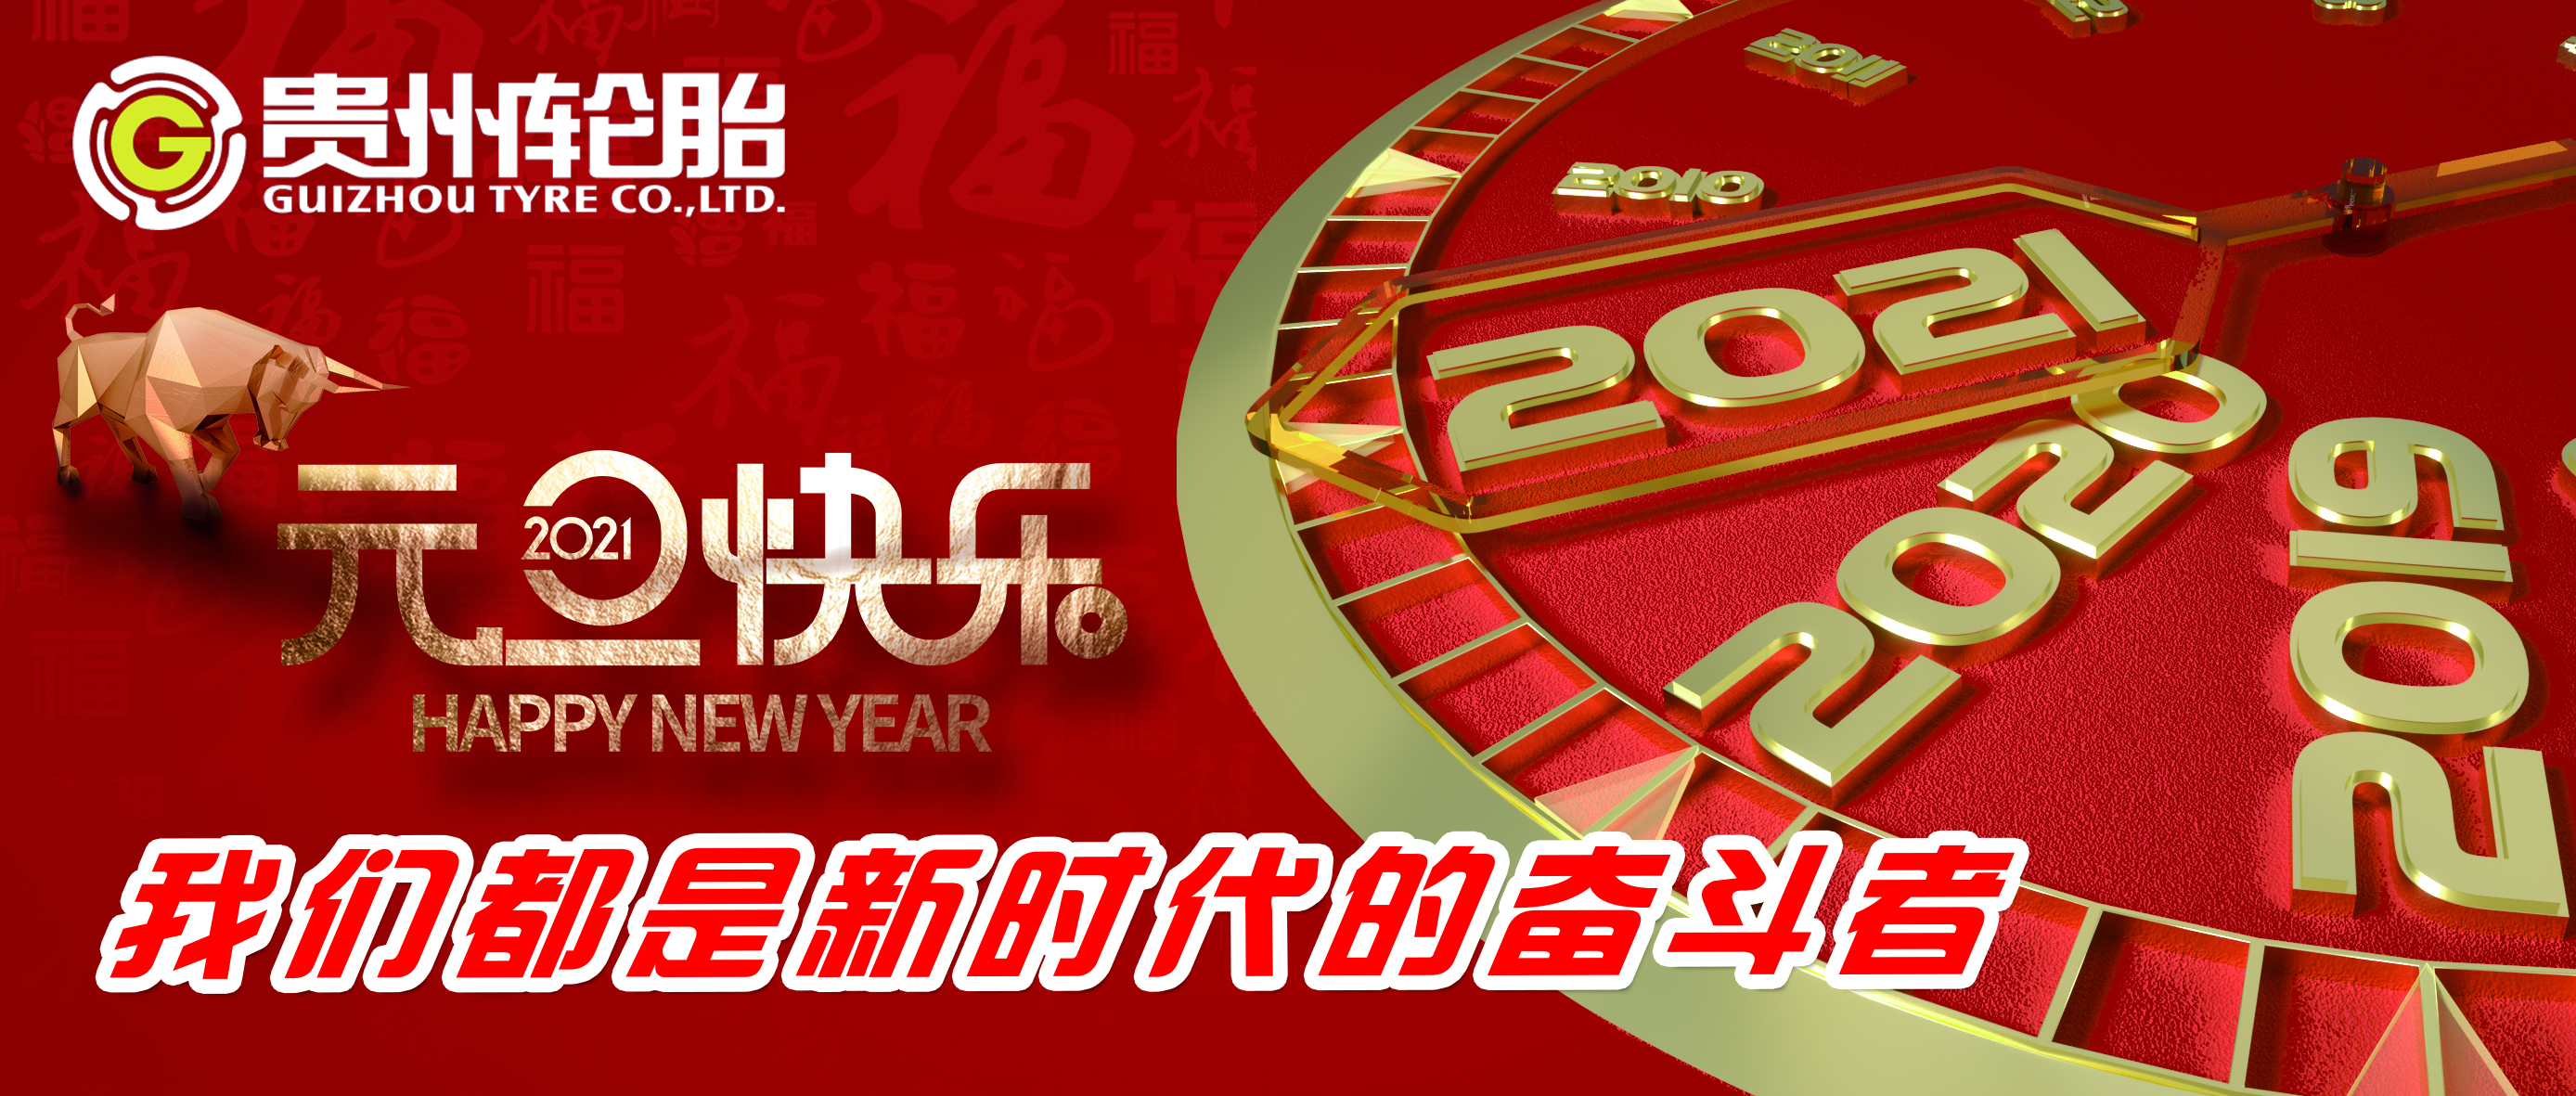 我们都是新时代的奋斗者——贵州轮胎恭祝您新年快乐！